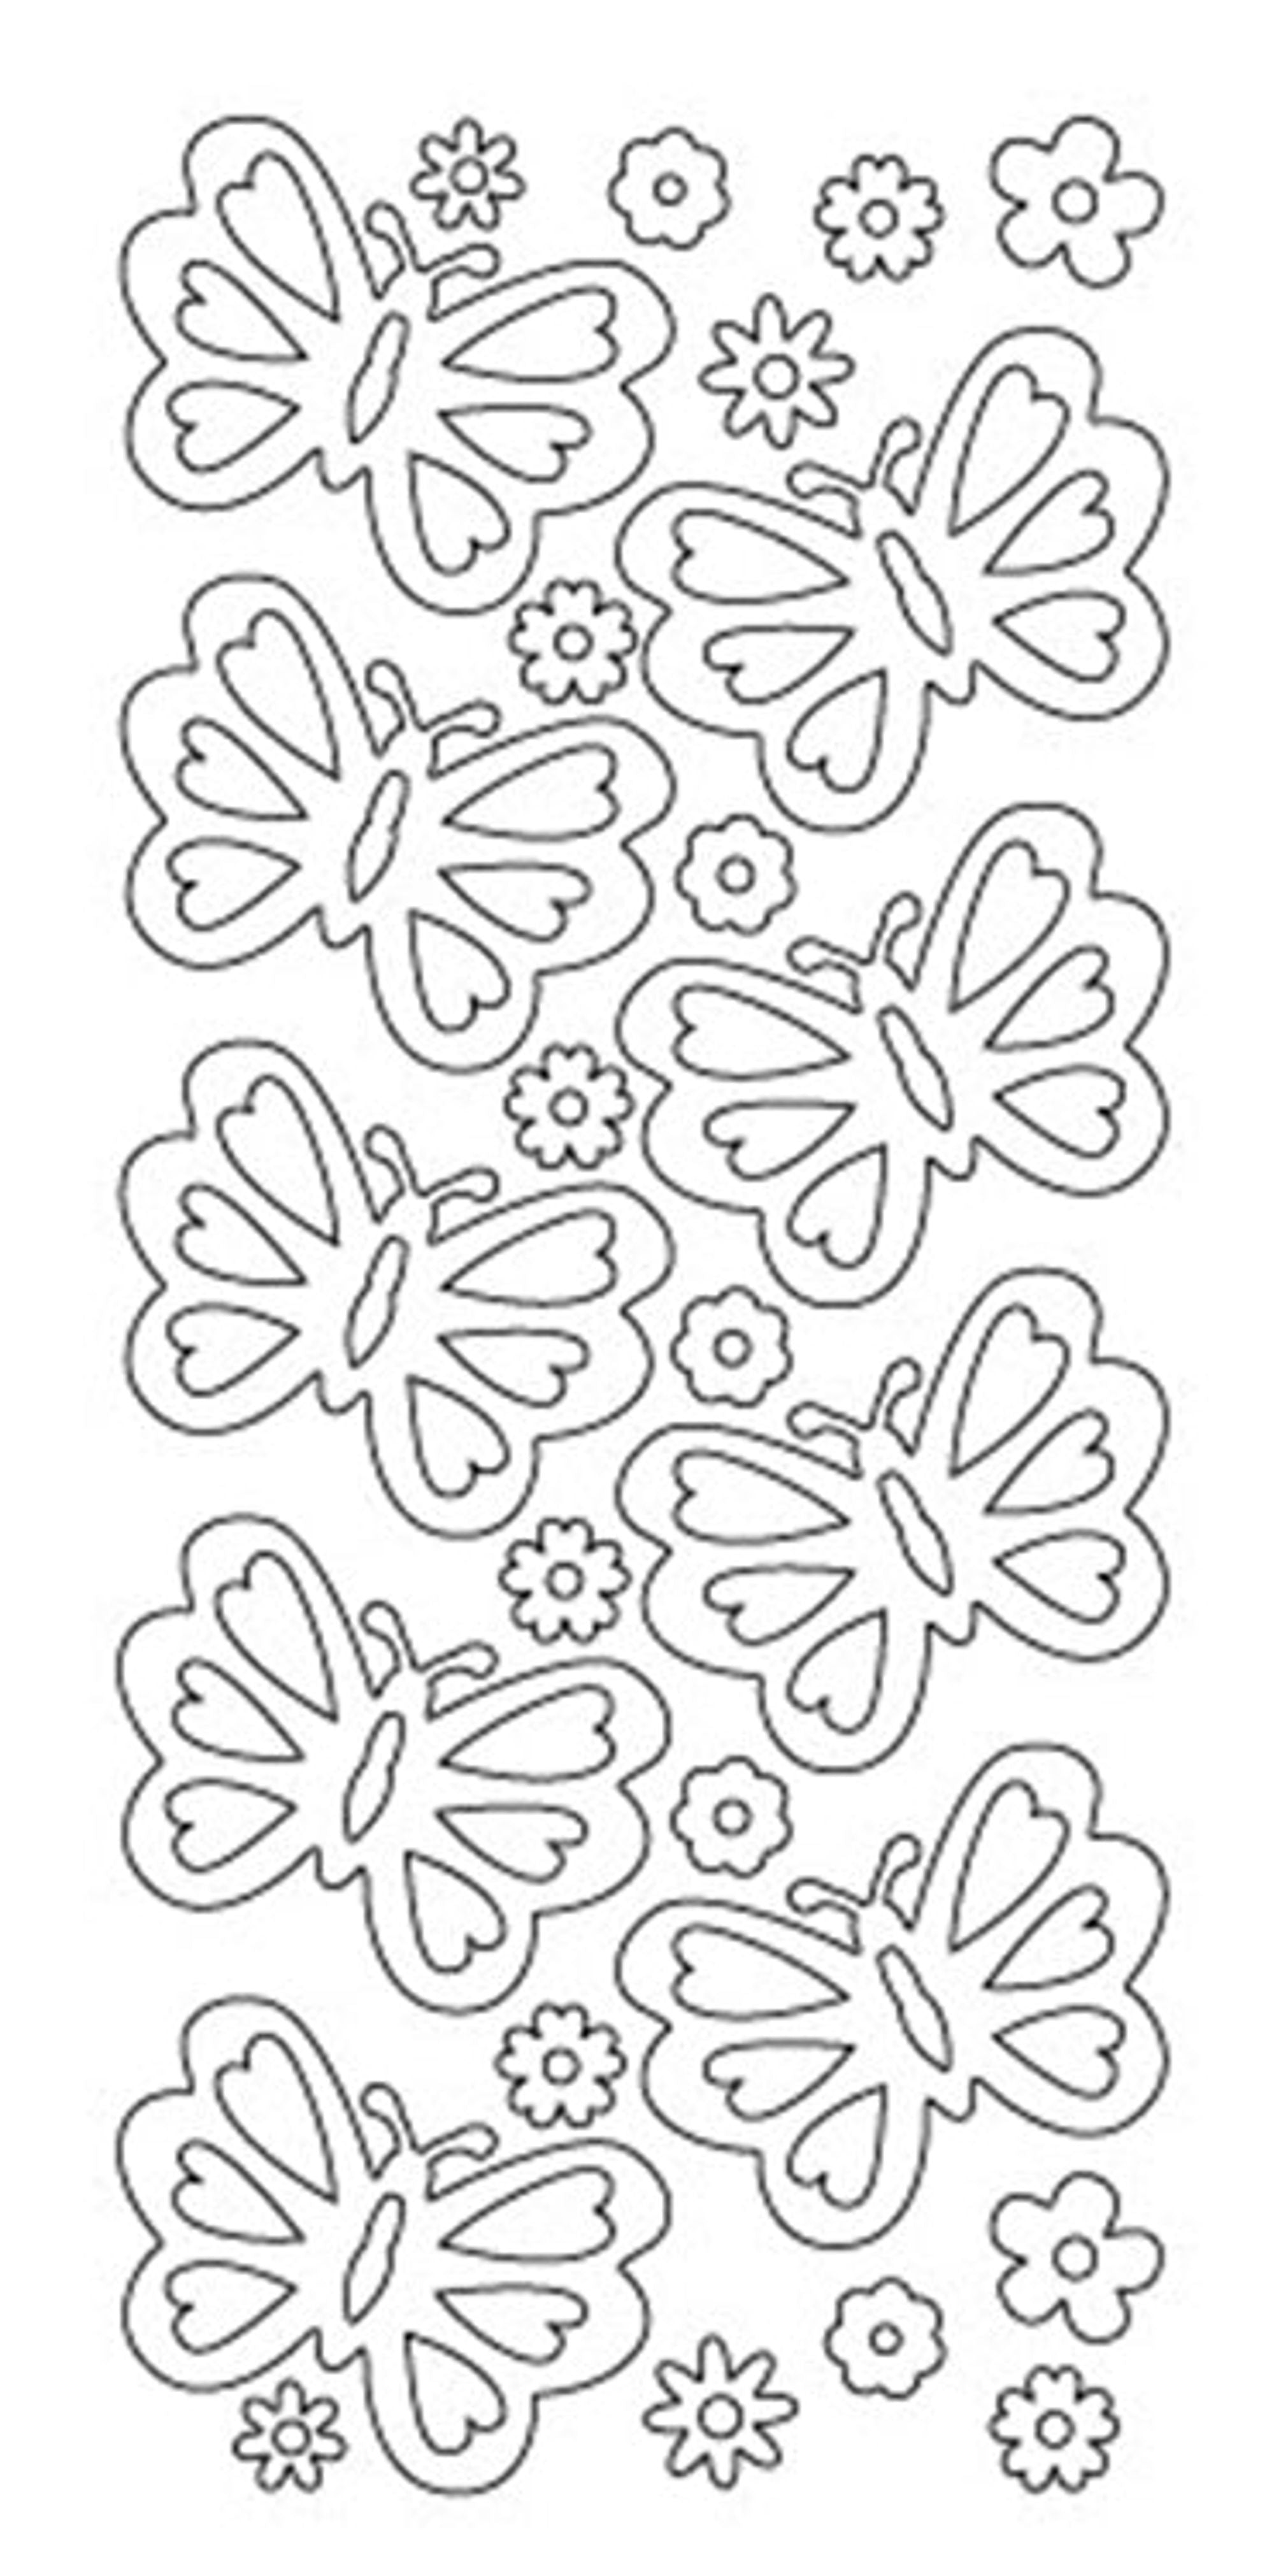 Double Sided Sticky Sticker - Butterflies